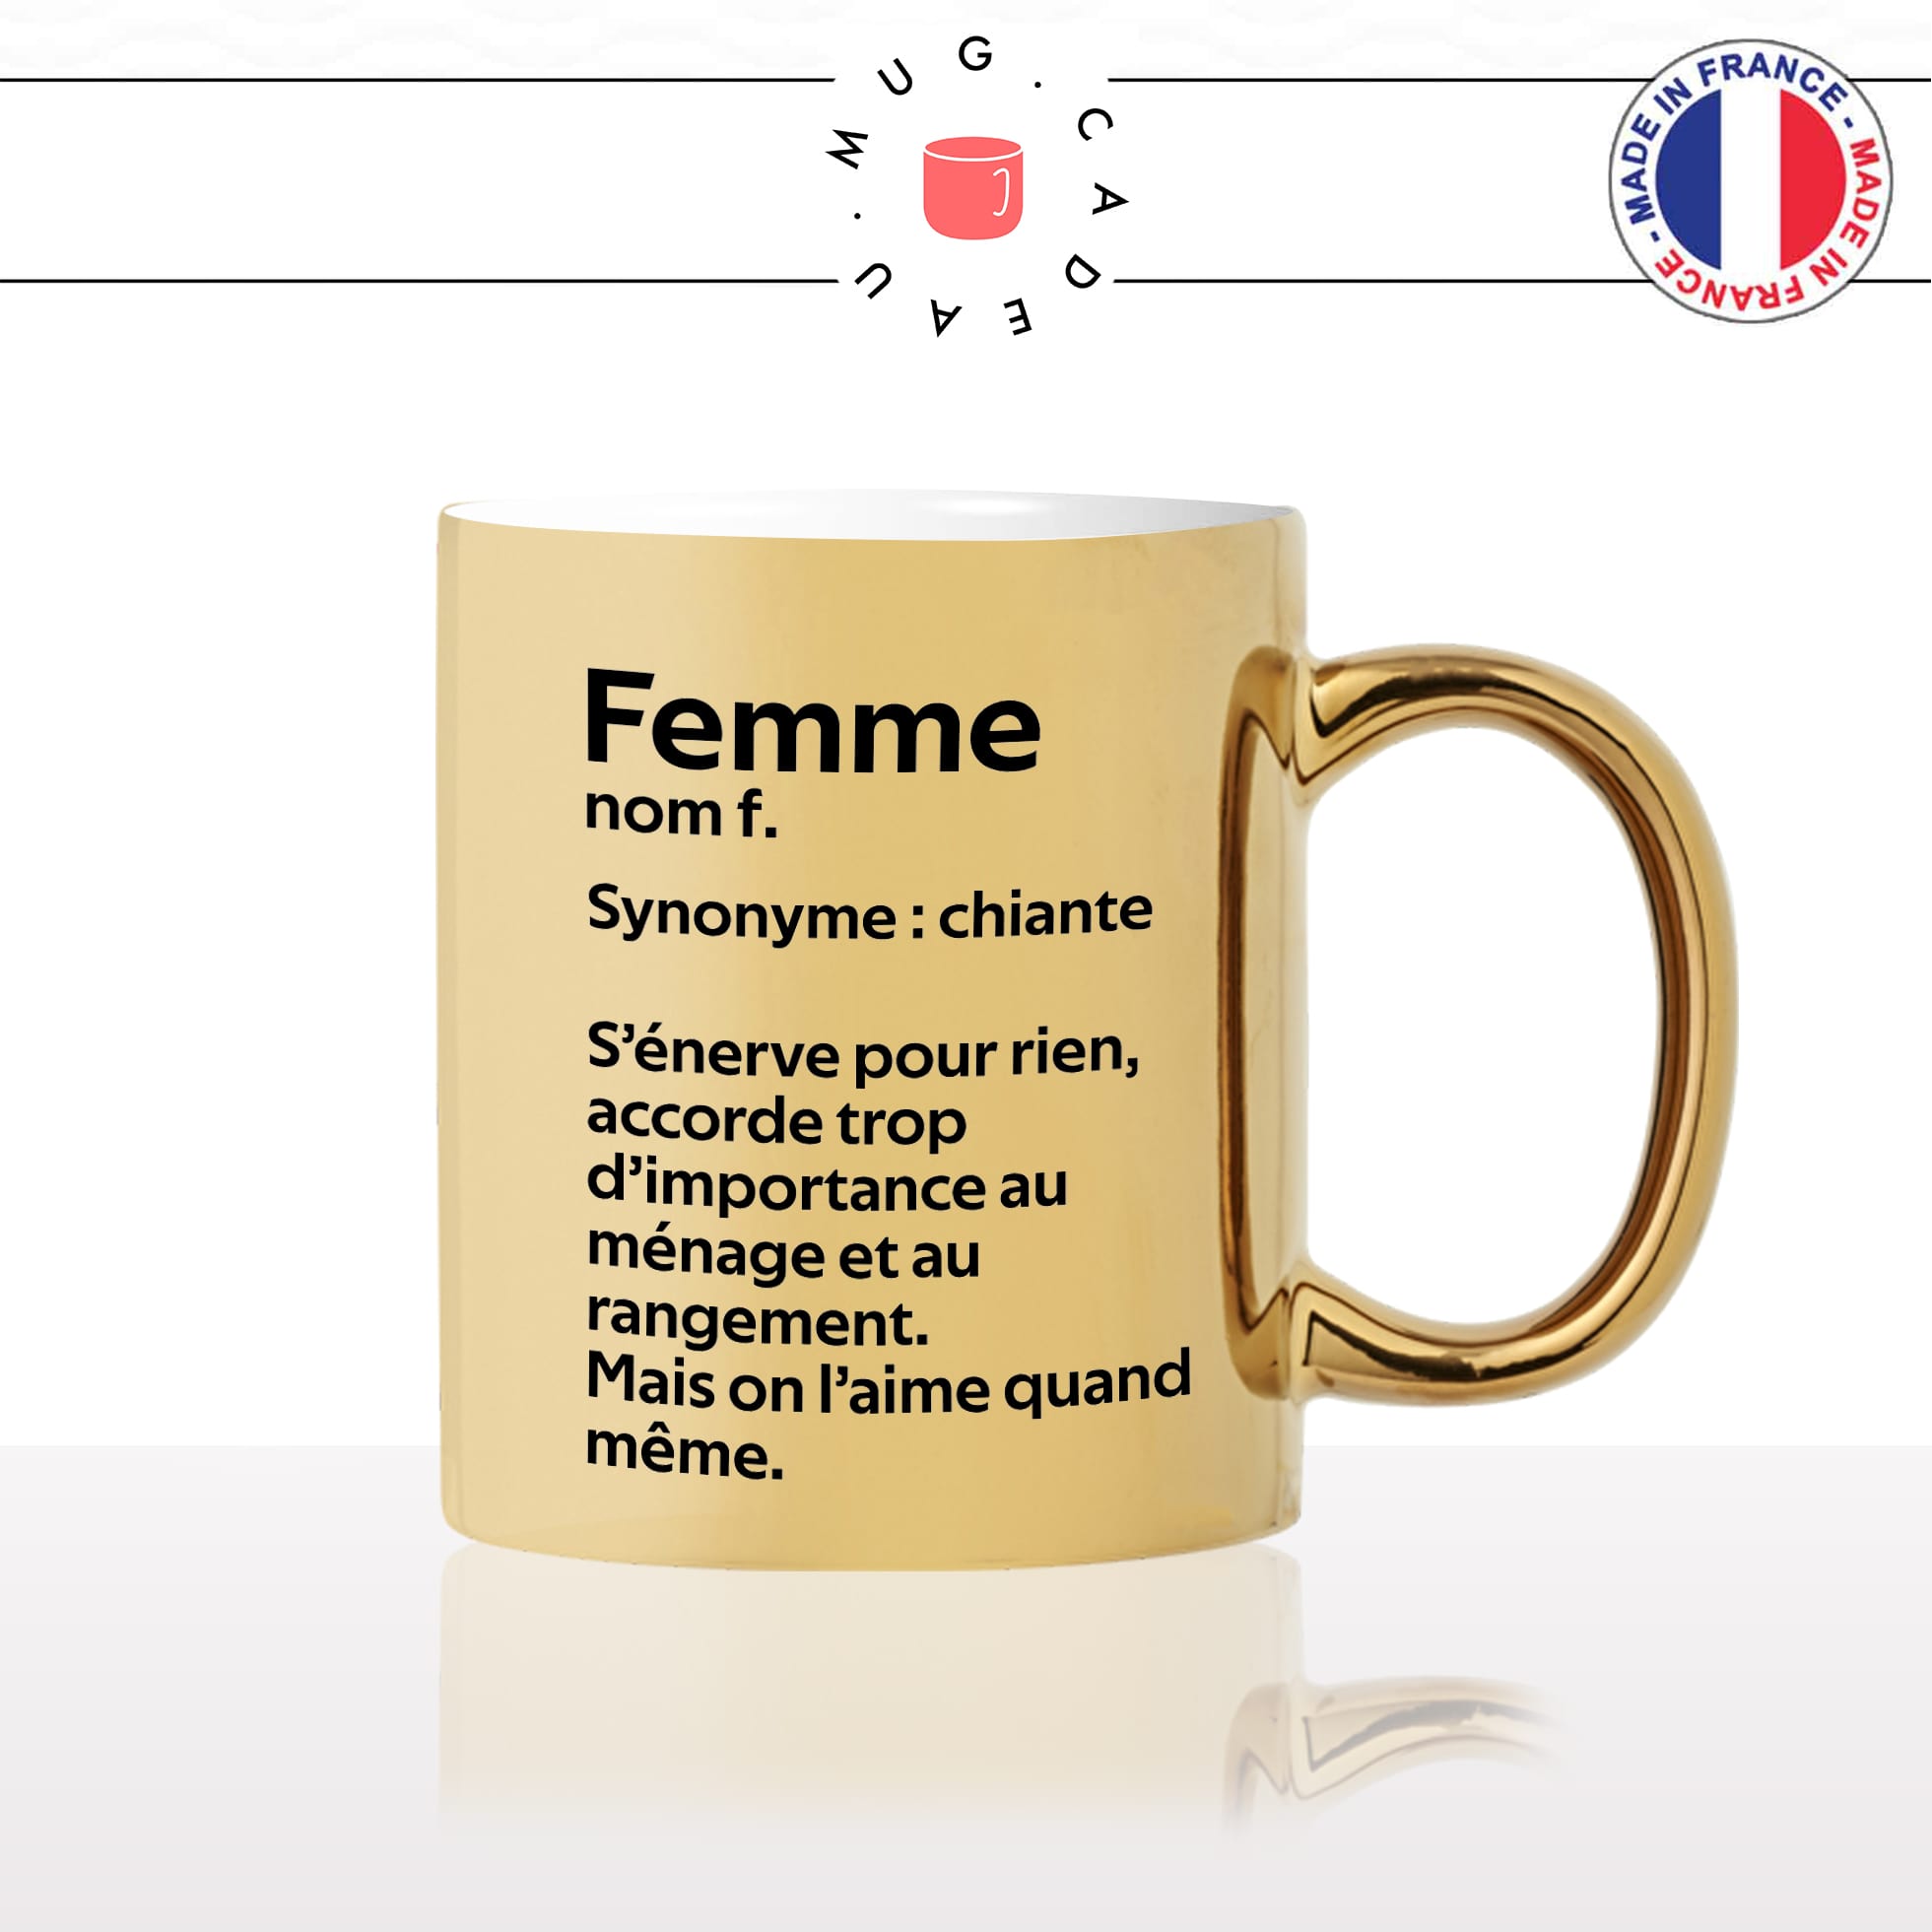 mug-tasse-or-doré-gold-femme-définition-synonyme-chiante-ménage-on-laime-homme-couple-maman-humour-fun-idée-cadeau-originale2-min